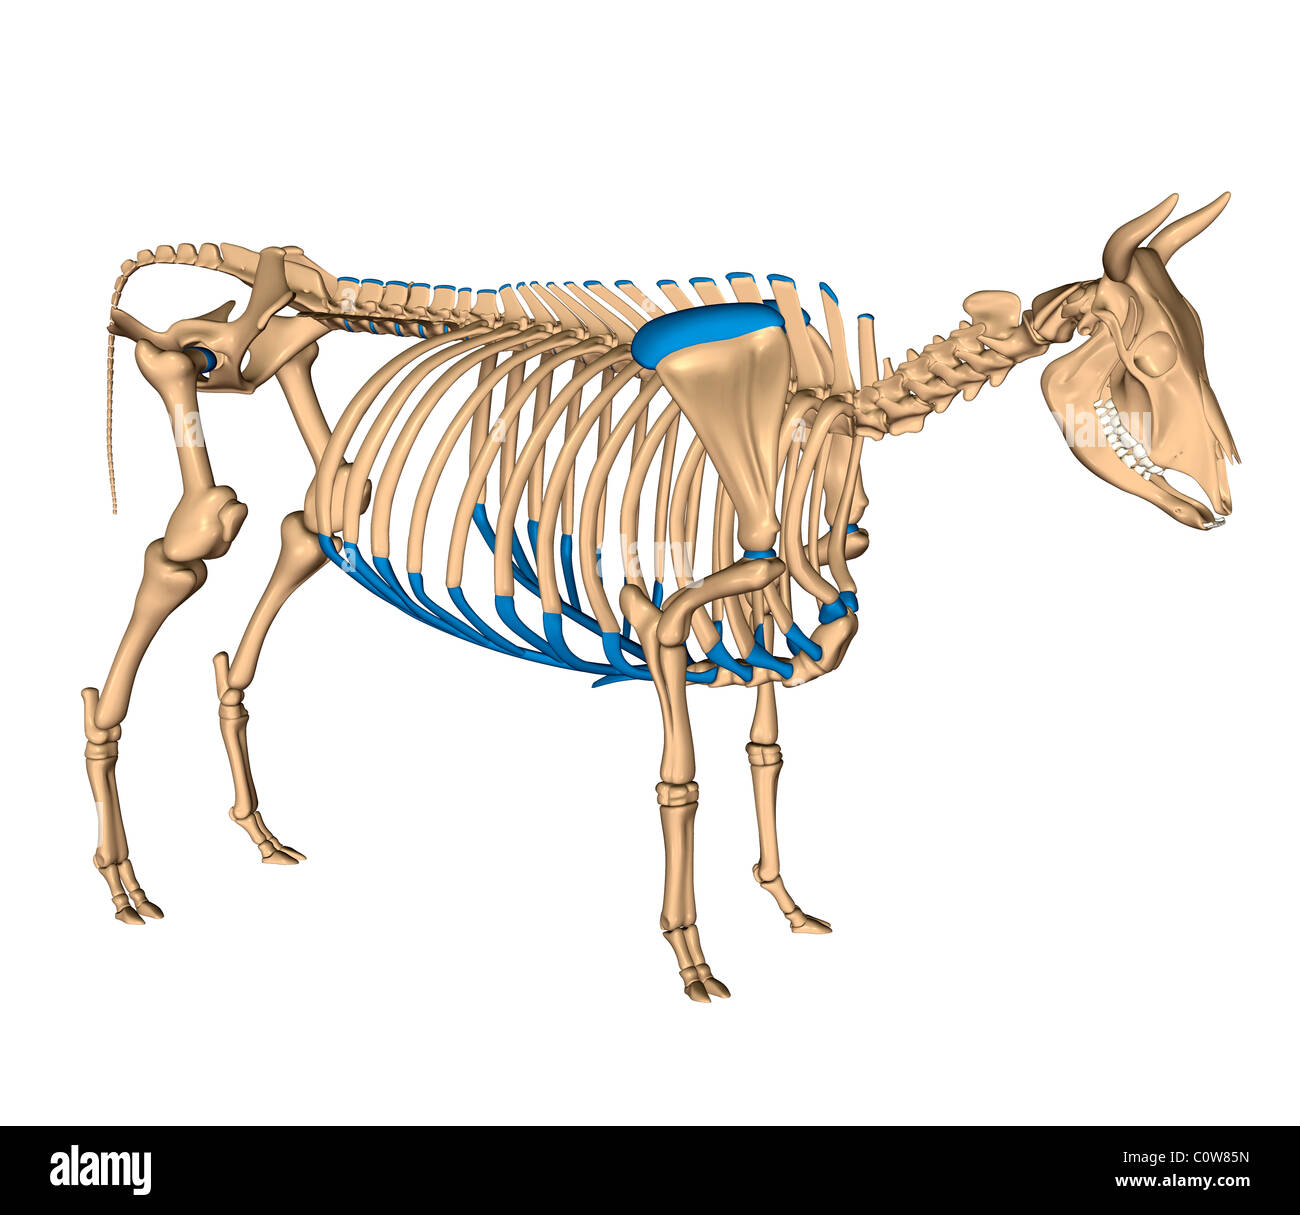 Anatomia dello scheletro di vacca Foto Stock